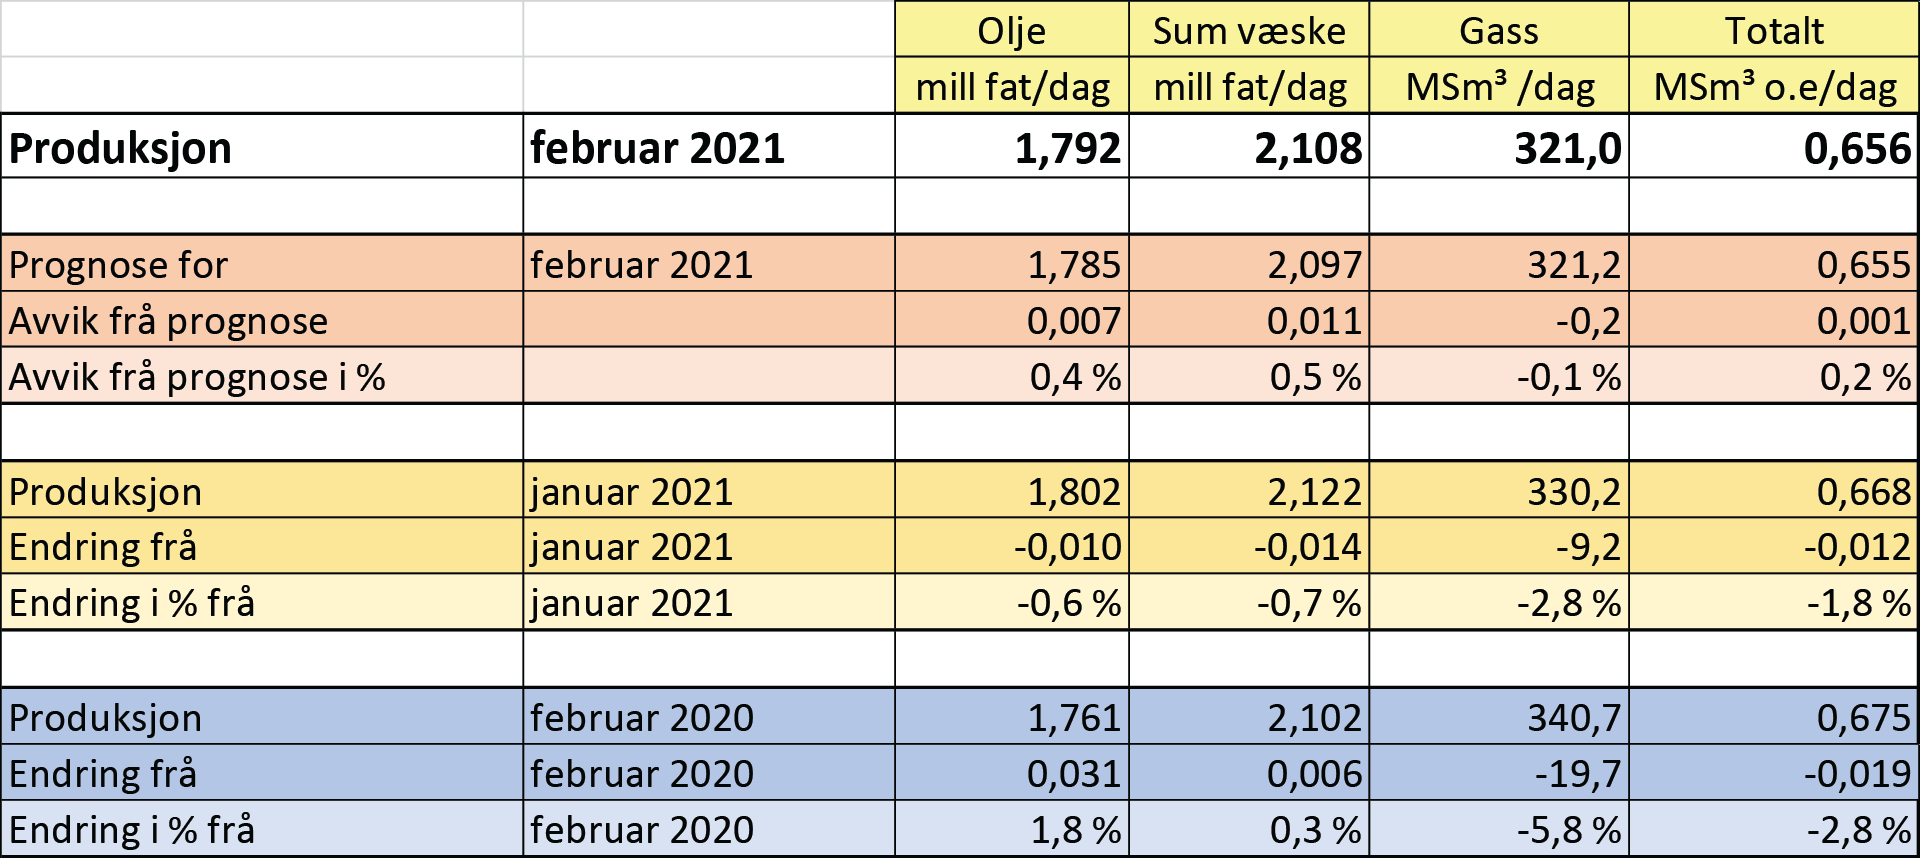 Tabell som viser olje- og gassproduksjon i februar 2021